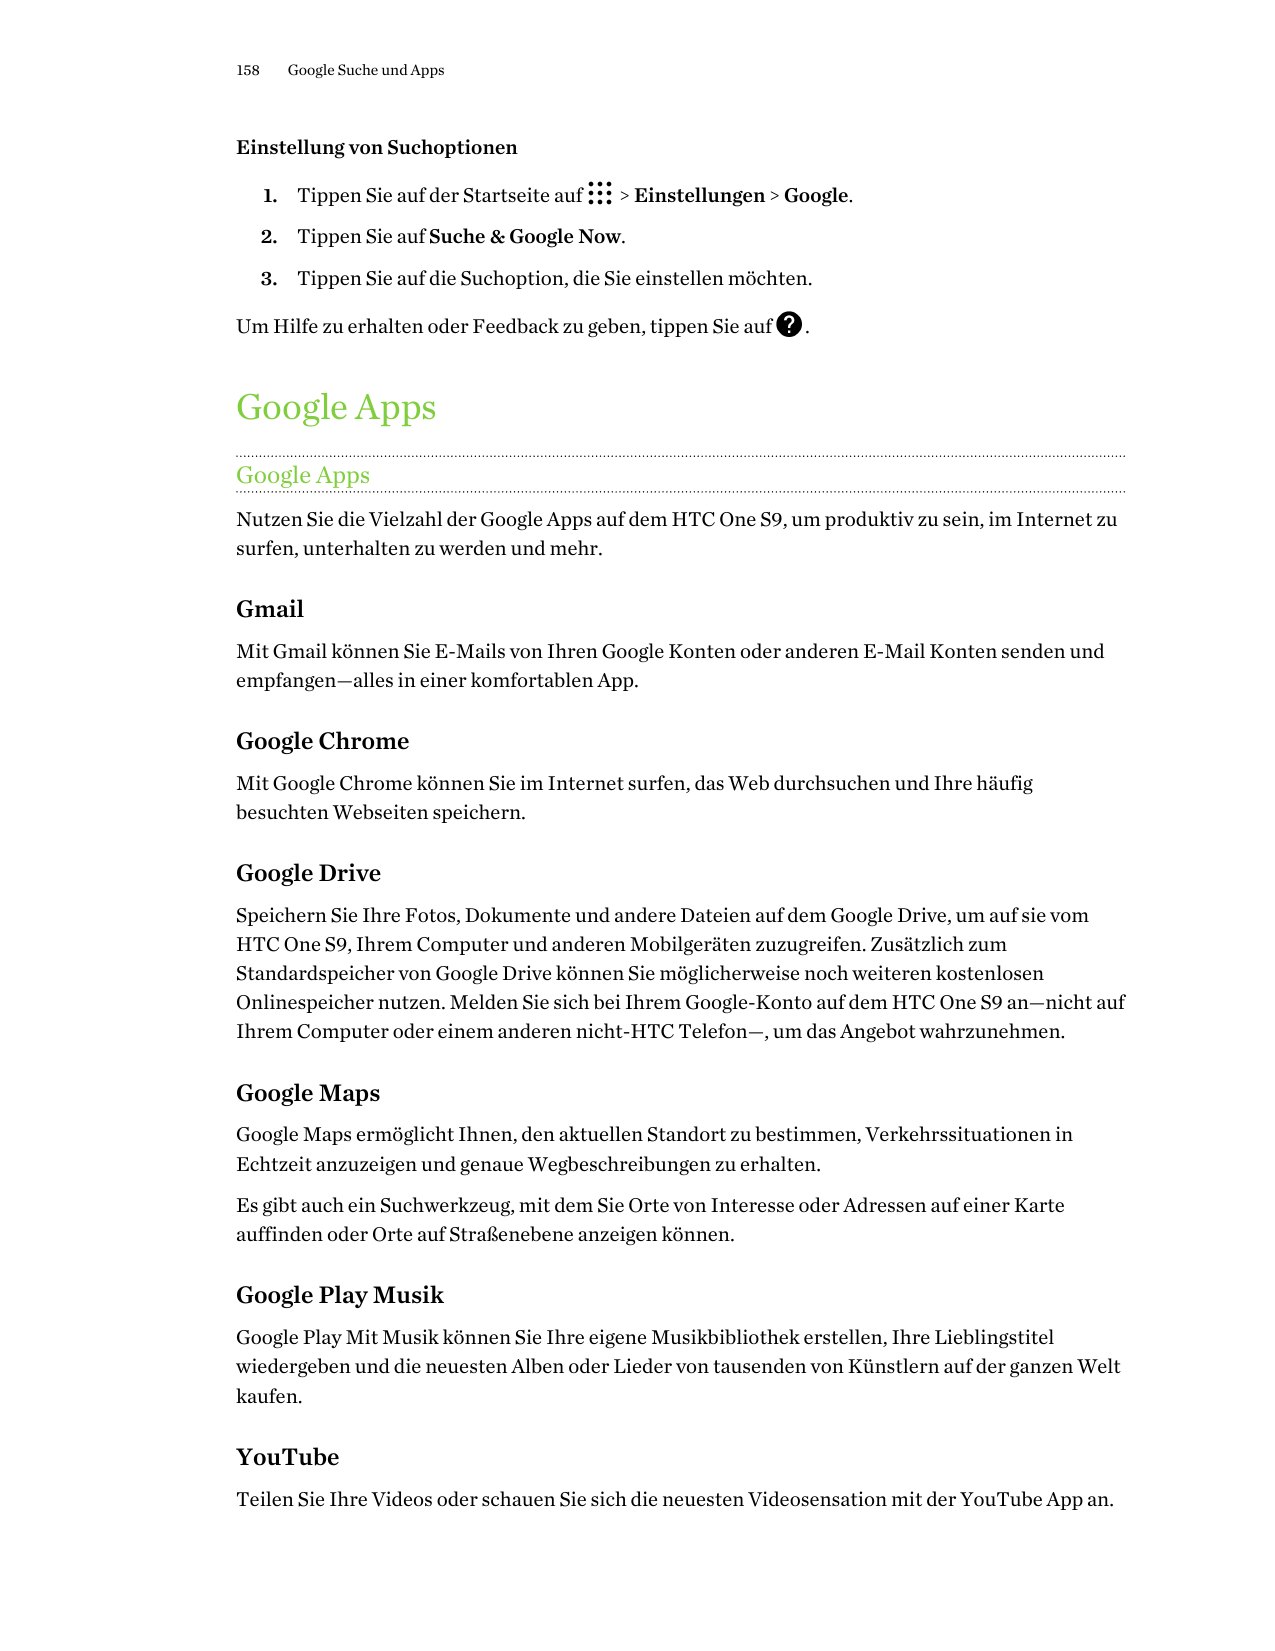 158Google Suche und AppsEinstellung von Suchoptionen1. Tippen Sie auf der Startseite auf> Einstellungen > Google.2. Tippen Sie a